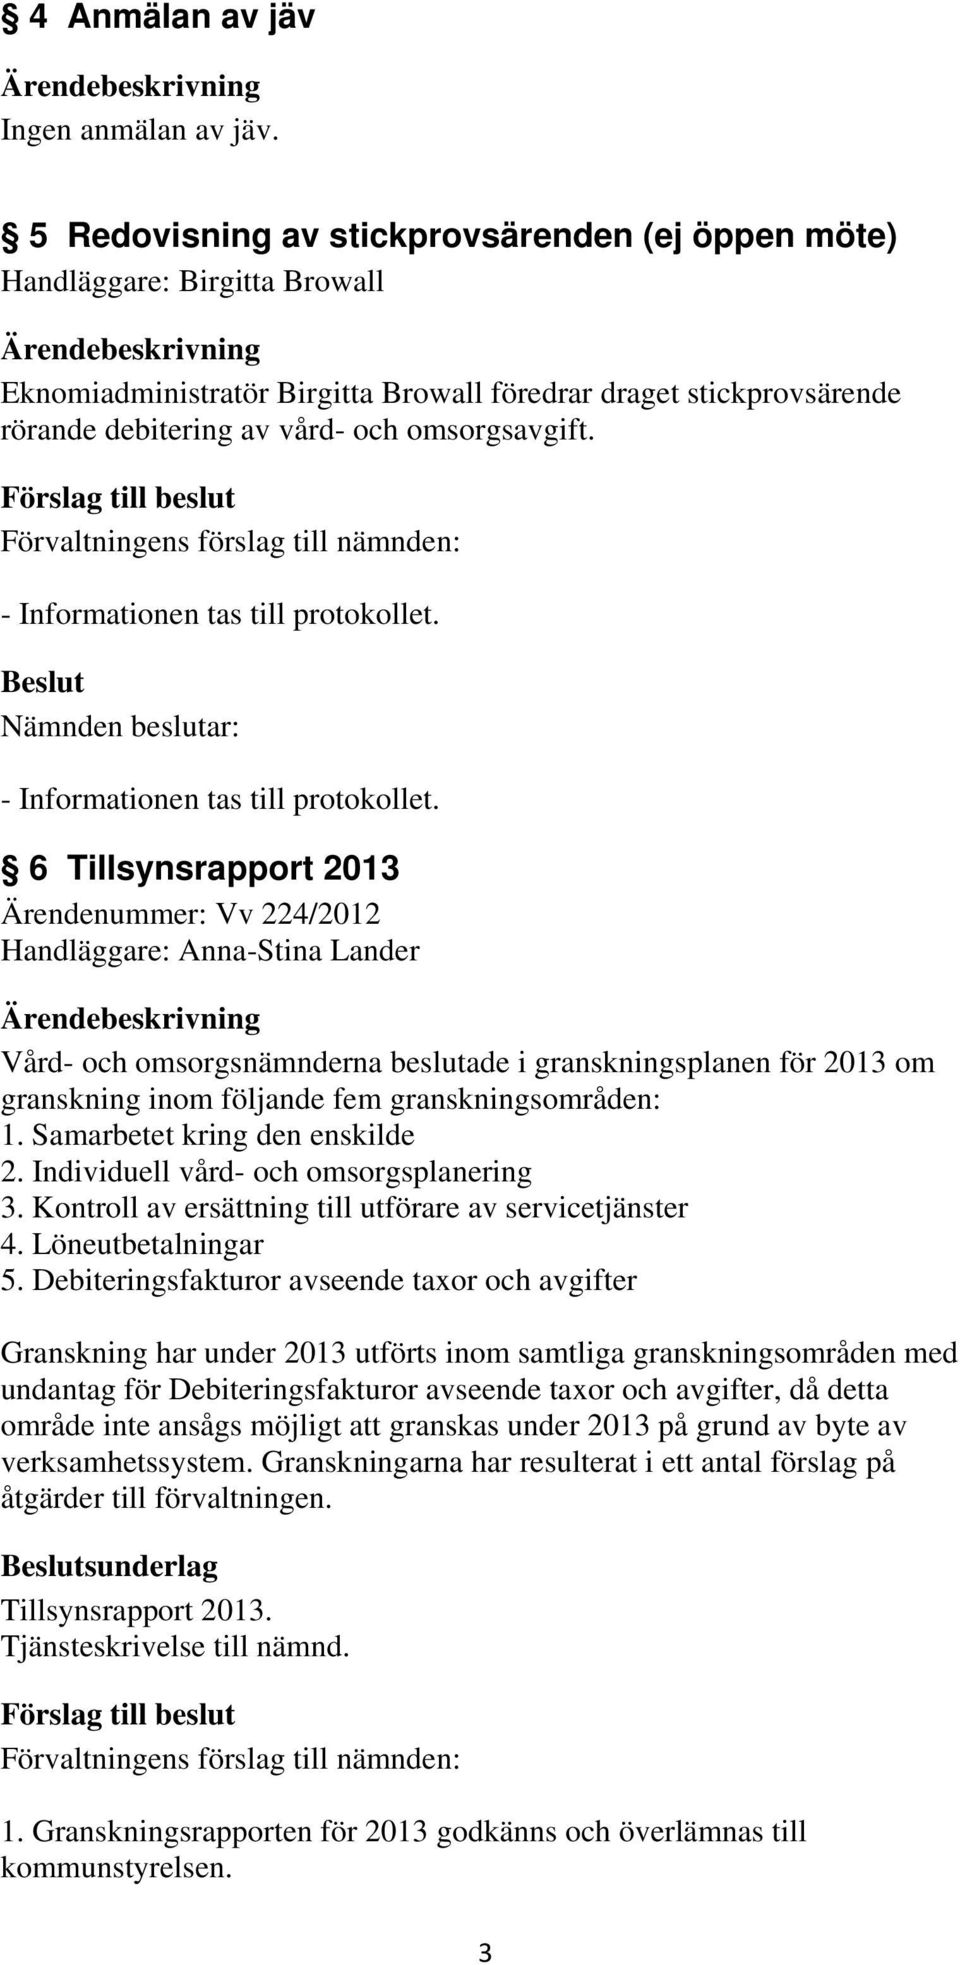 6 Tillsynsrapport 2013 Ärendenummer: Vv 224/2012 Handläggare: Anna-Stina Lander Vård- och omsorgsnämnderna beslutade i granskningsplanen för 2013 om granskning inom följande fem granskningsområden: 1.